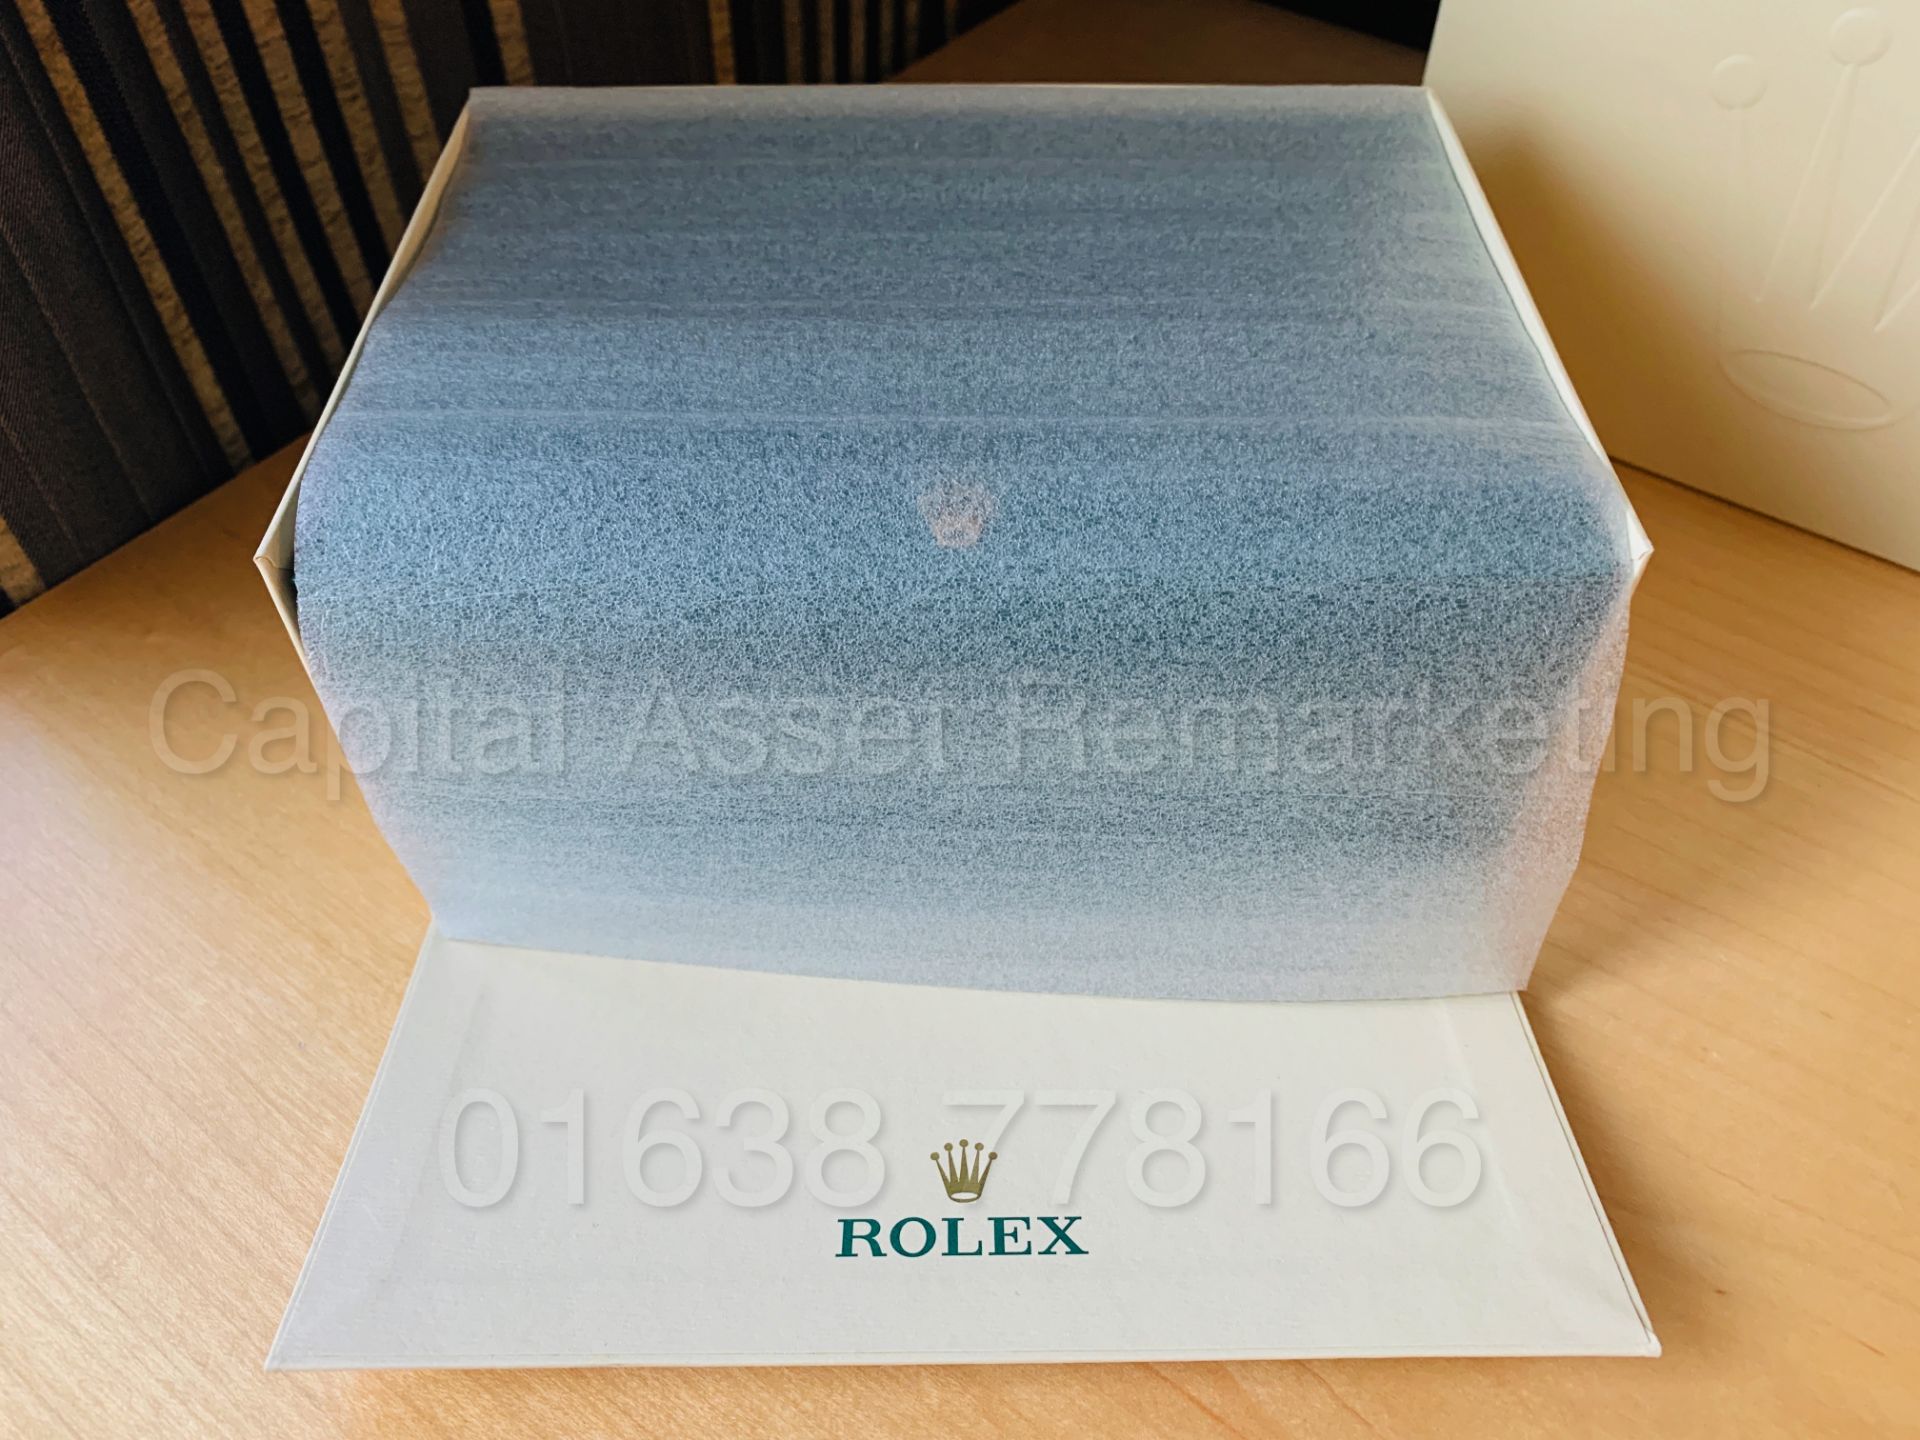 (On Sale) ROLEX MILGAUSS 40MM (BRAND NEW / UN-WORN - 2019) *GENUINE ROLEX* (BOX & WARRANTY CARD) - Image 11 of 12